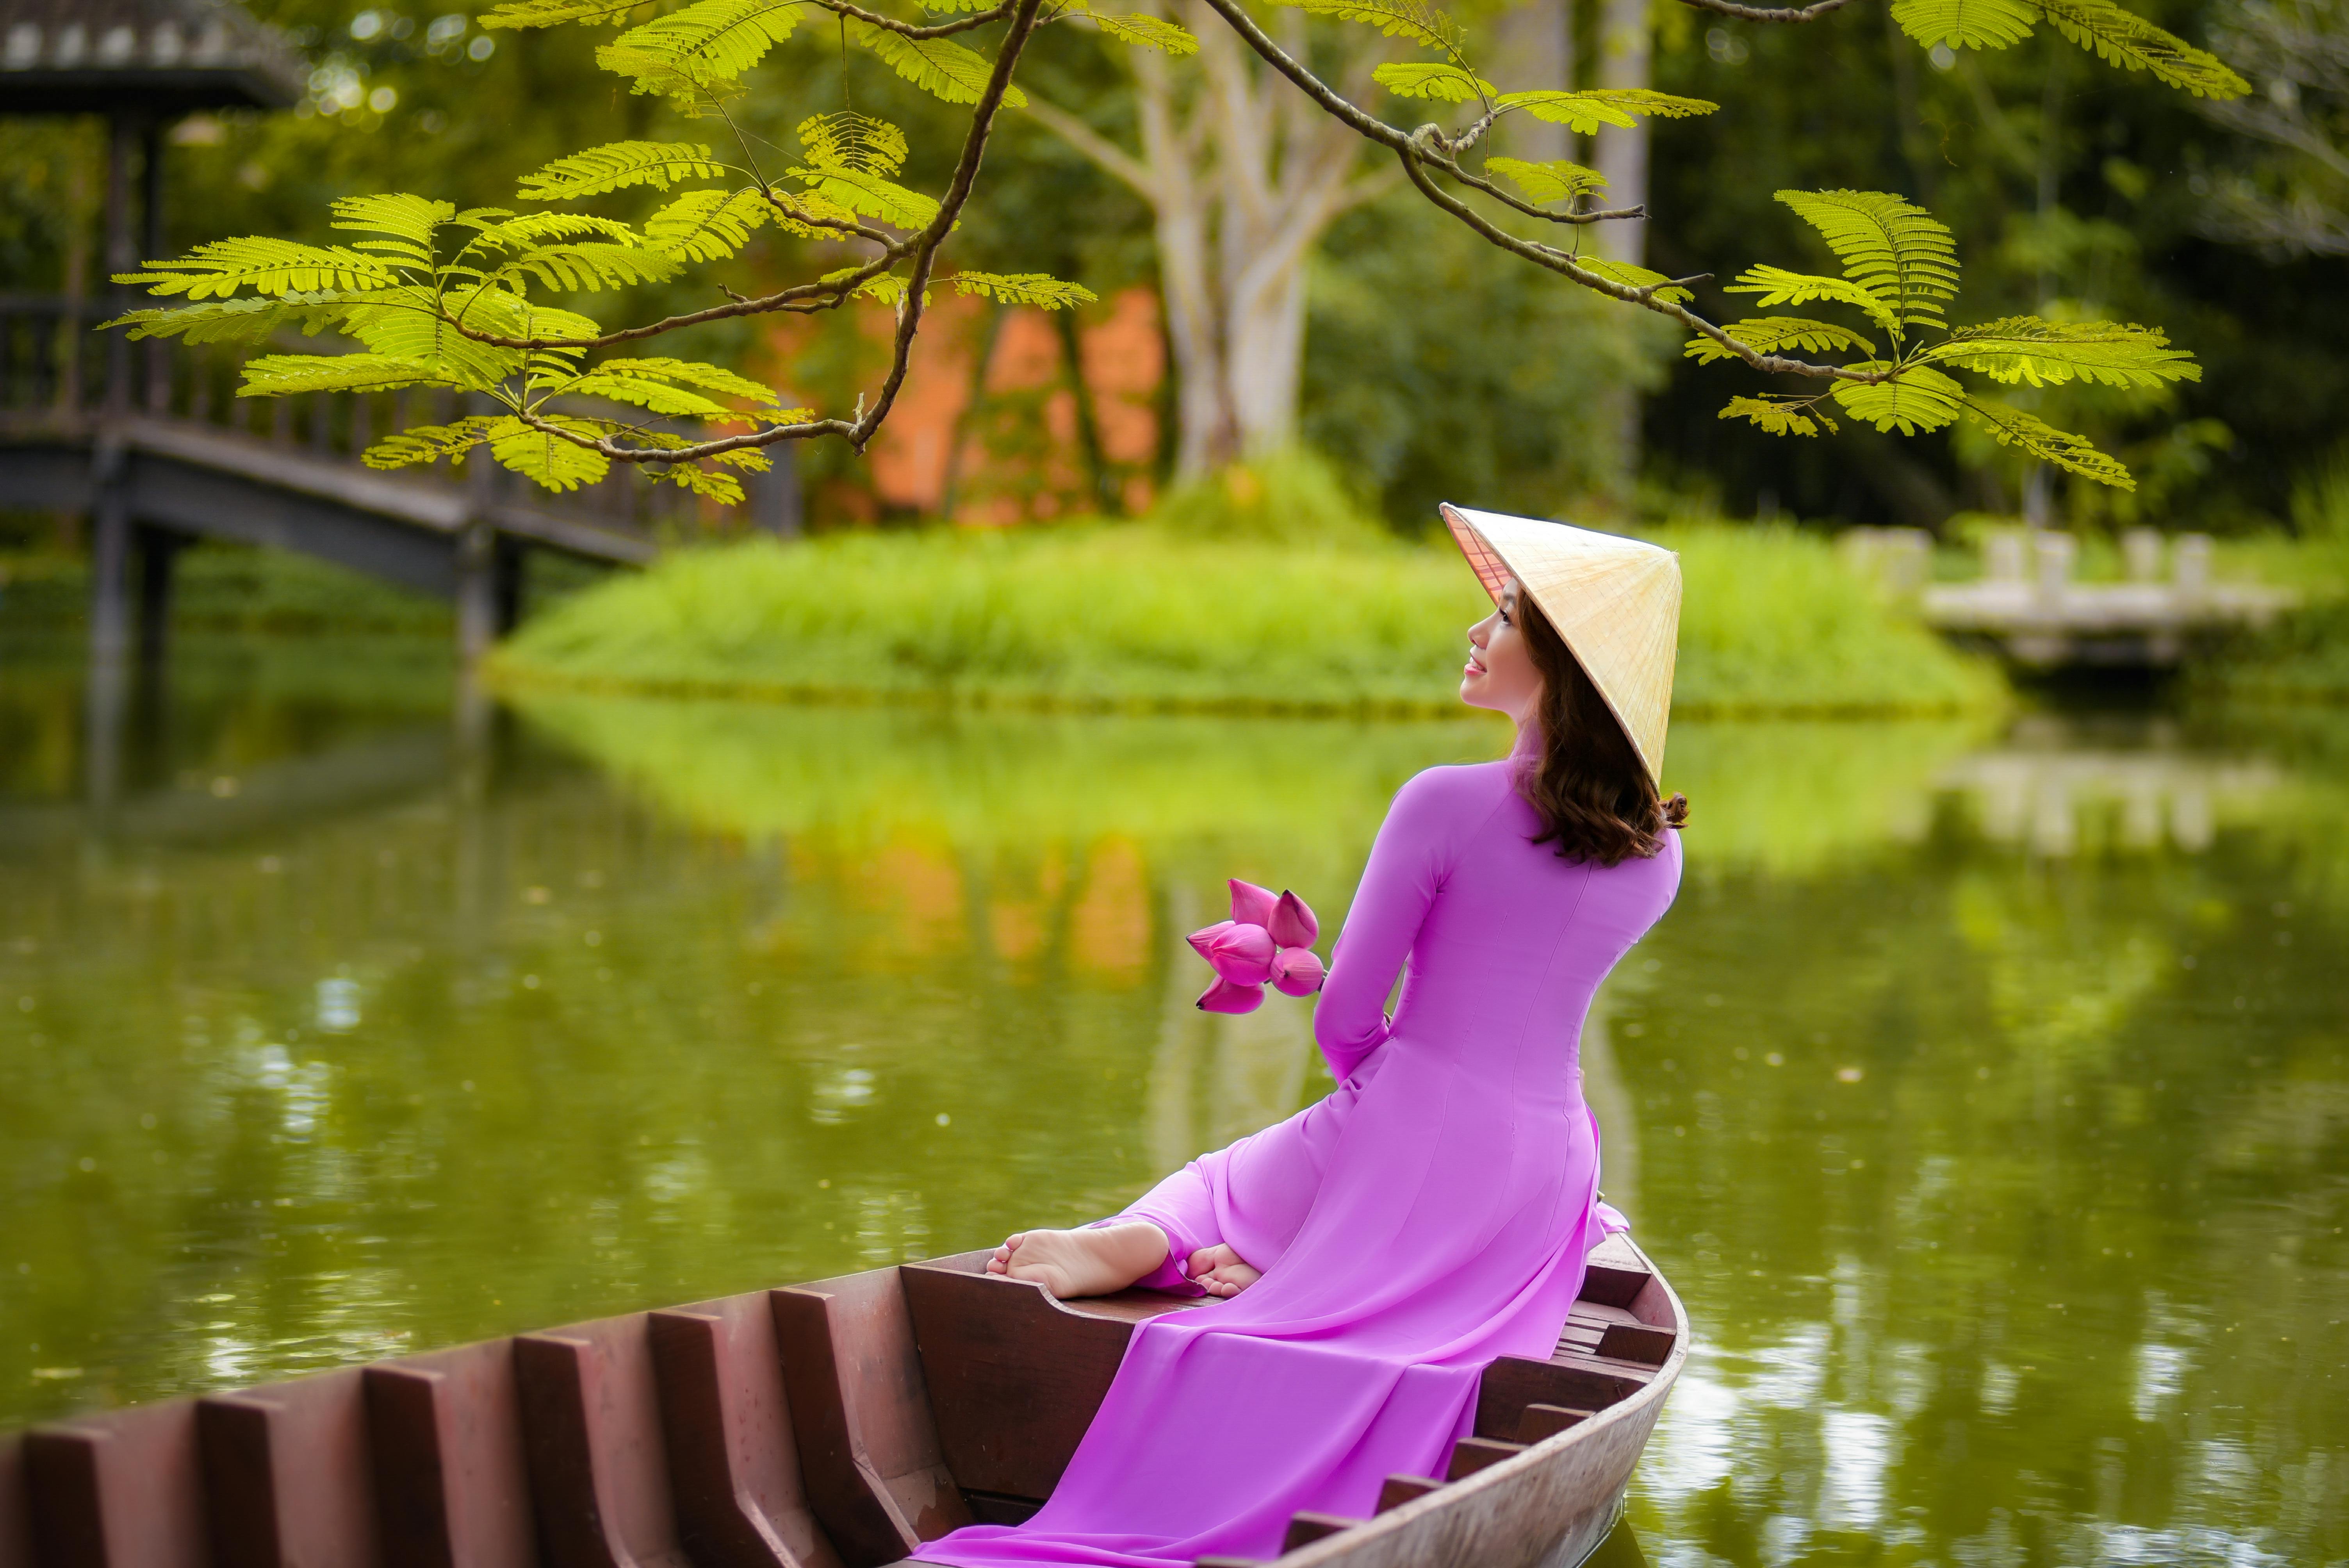 Tuyển chọn 500+ Ảnh đẹp phụ nữ Việt Nam với nét đẹp tự nhiên và tinh tế